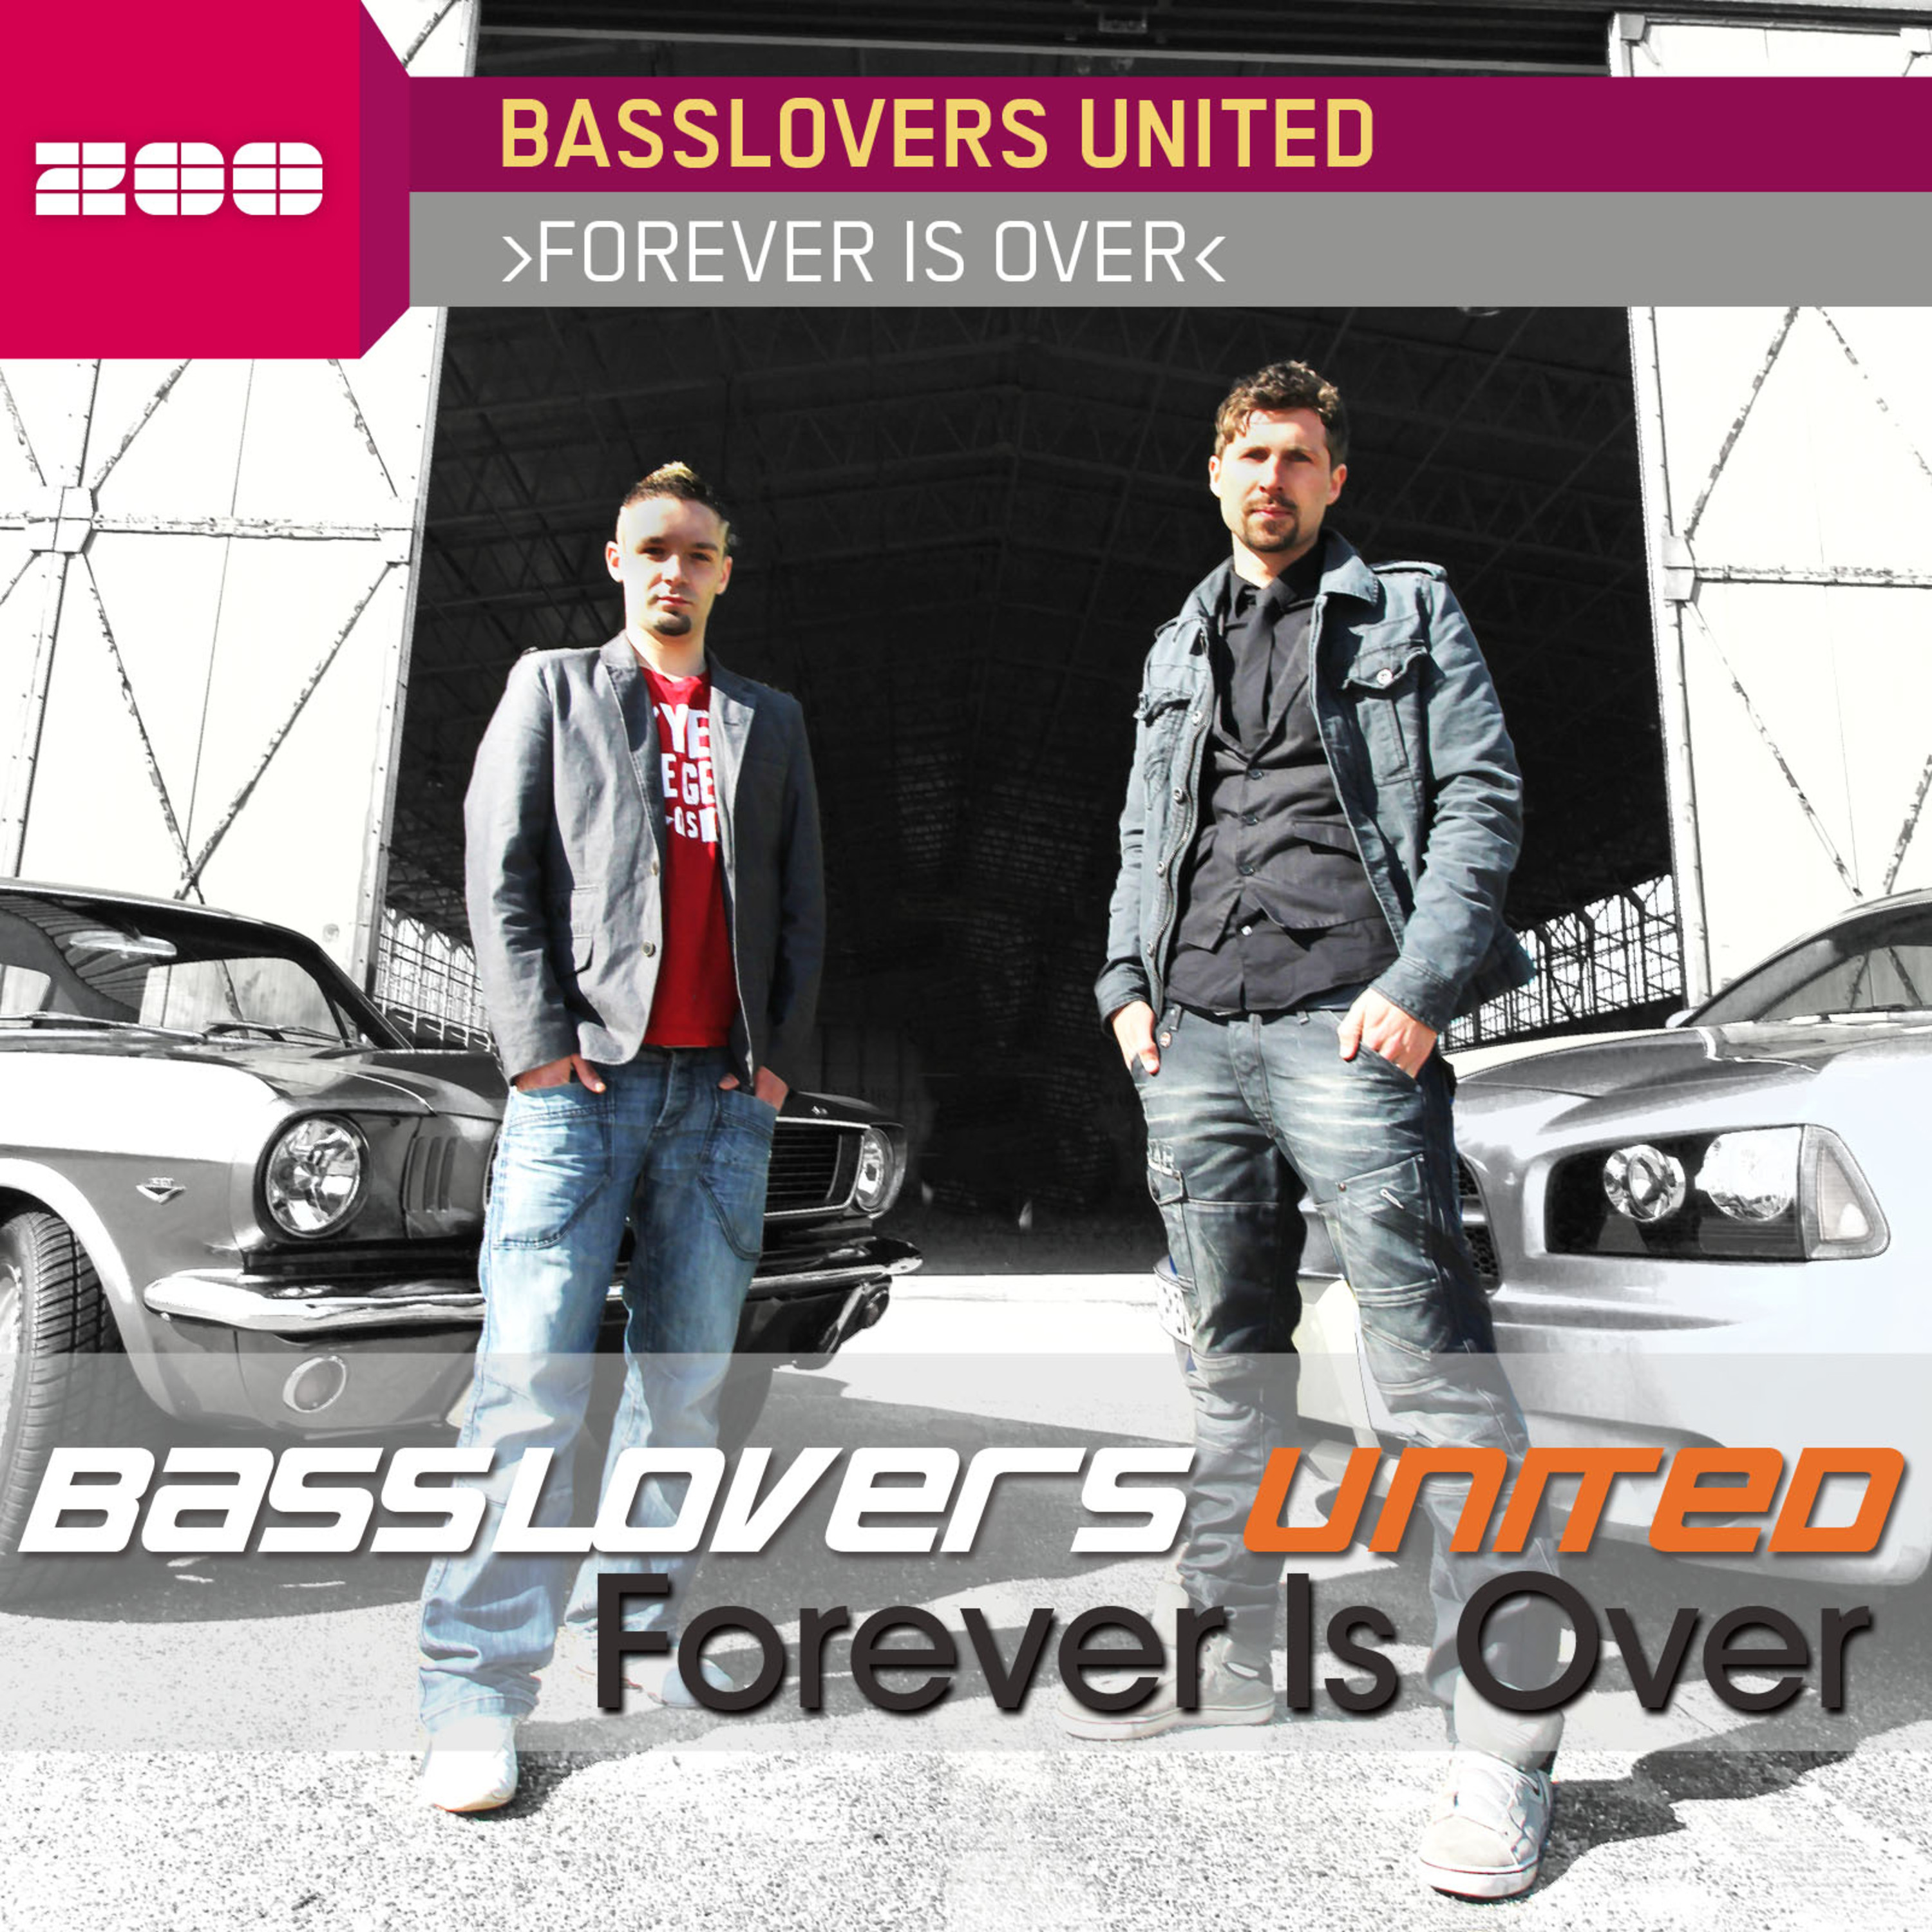 Forever Is Over (Marco van Bassken Radio Edit)